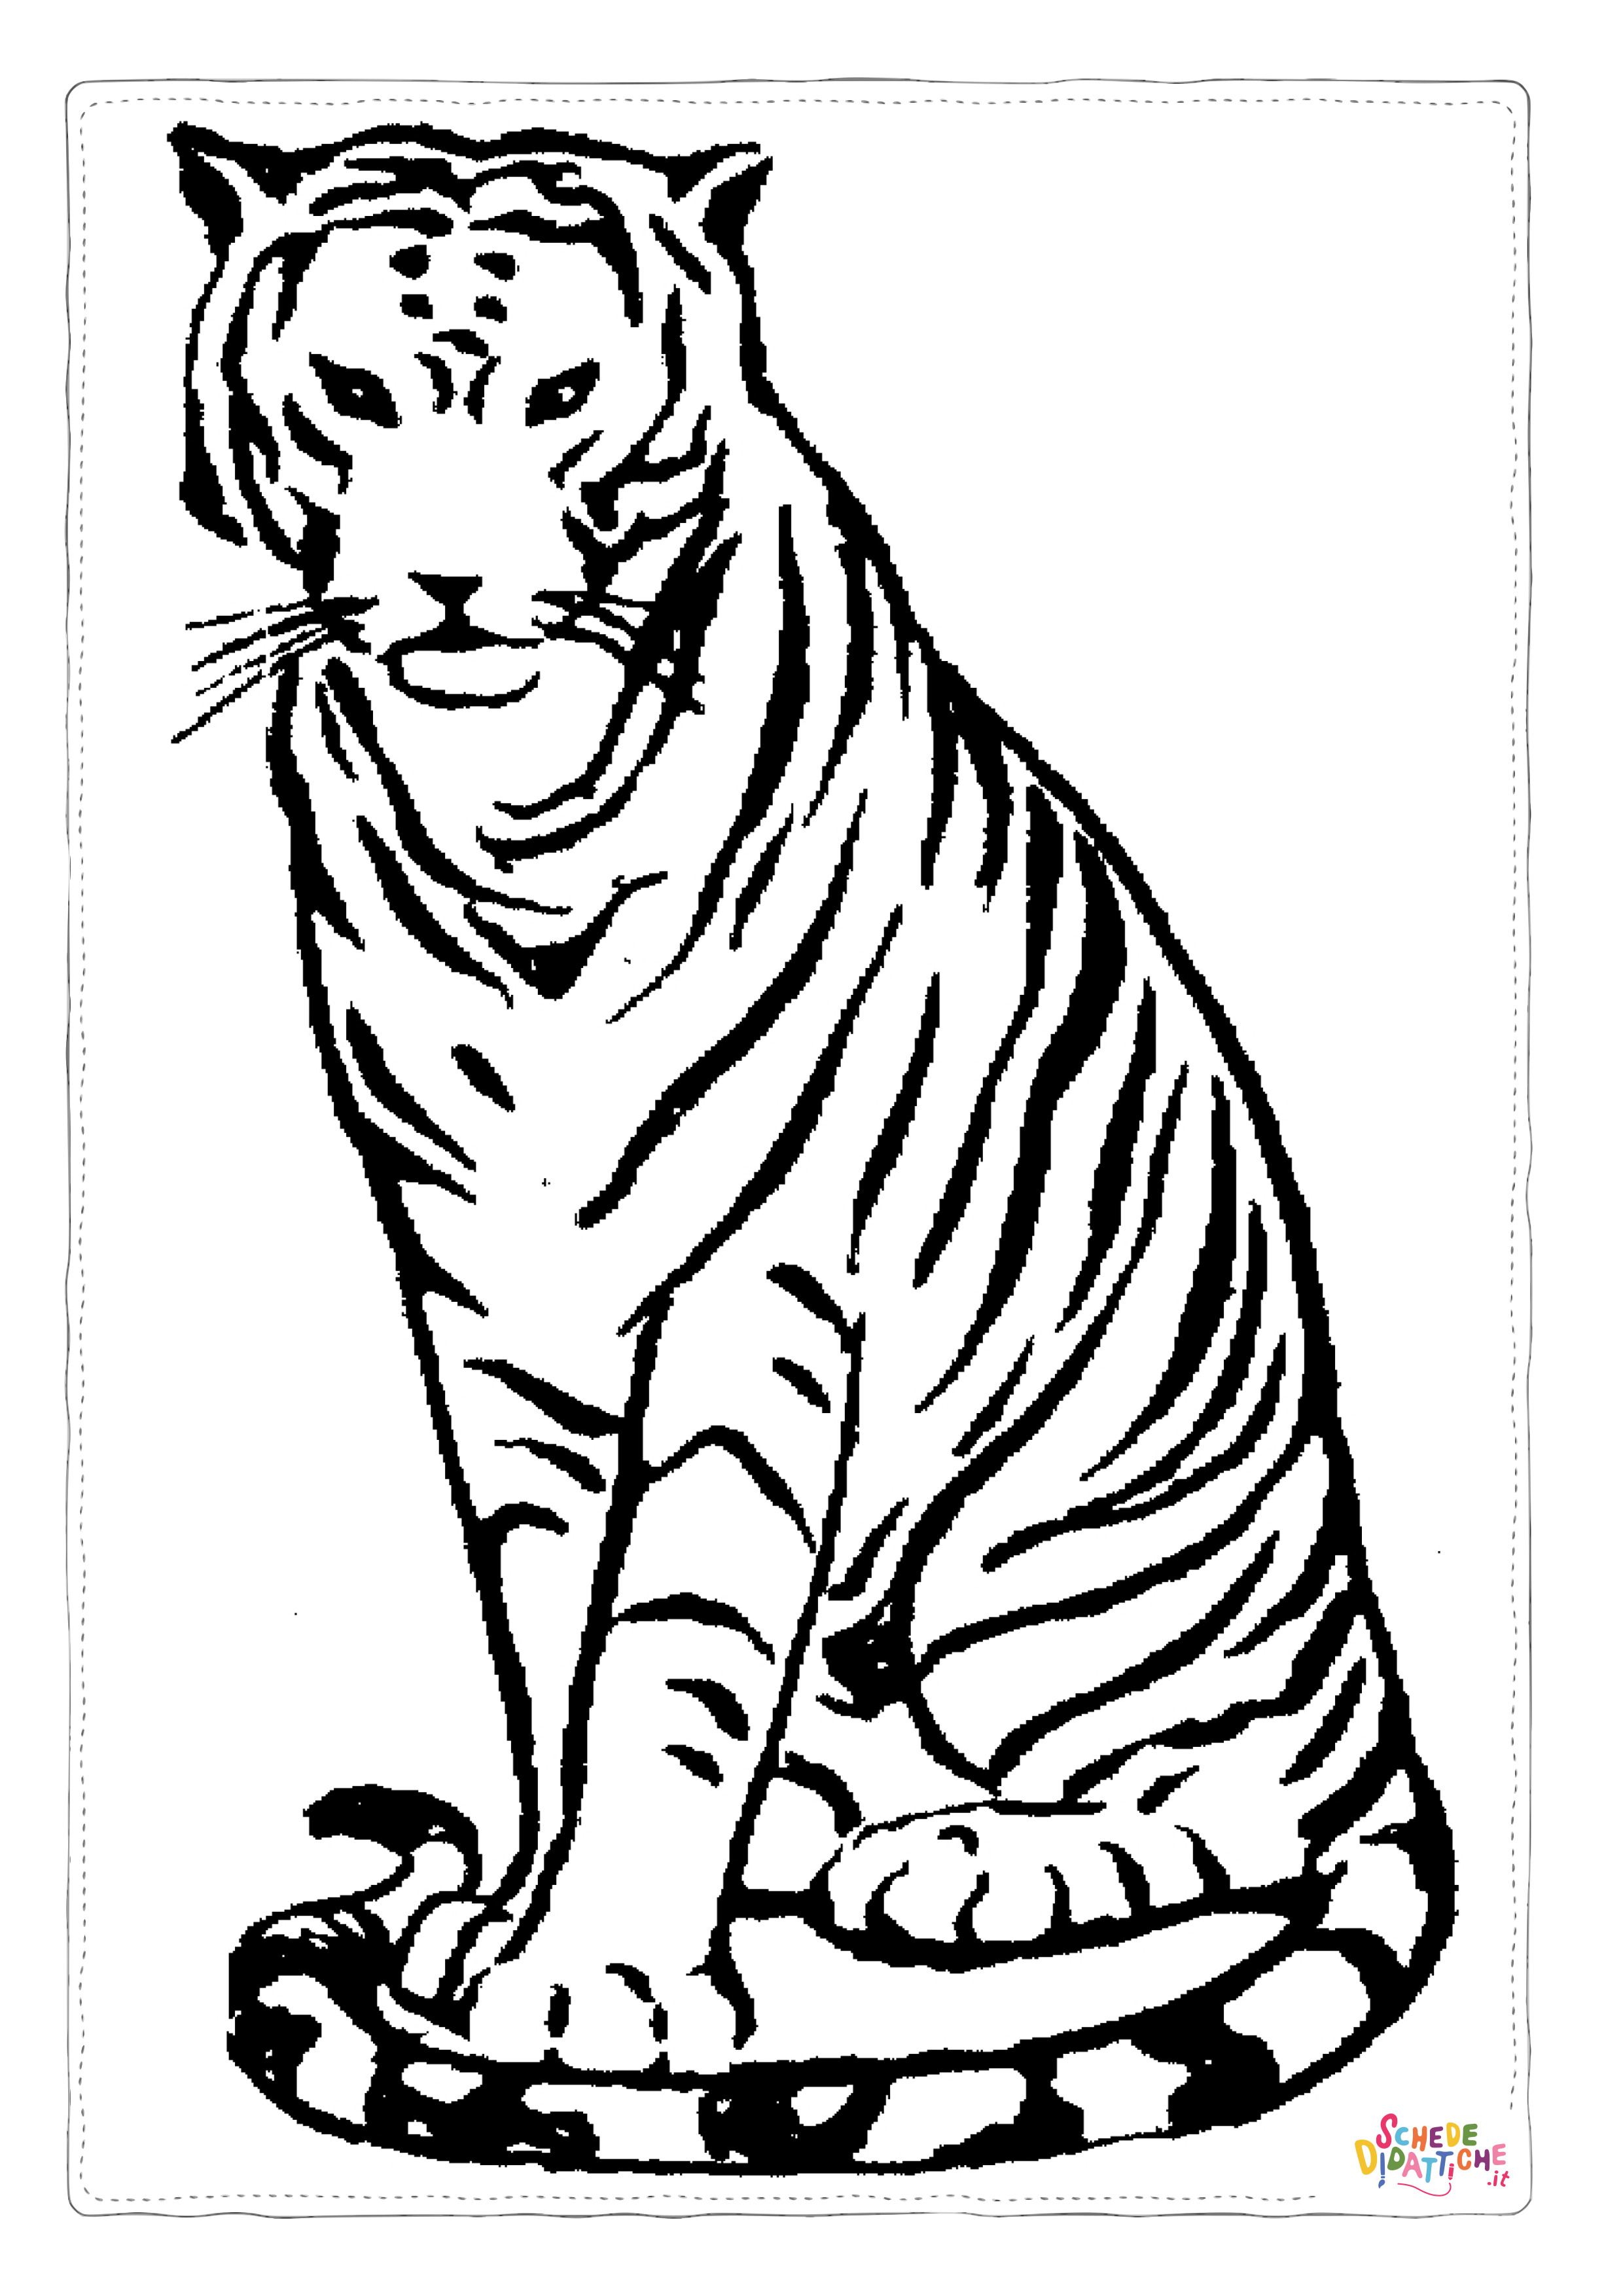 Disegno di tigre da stampare e colorare 1